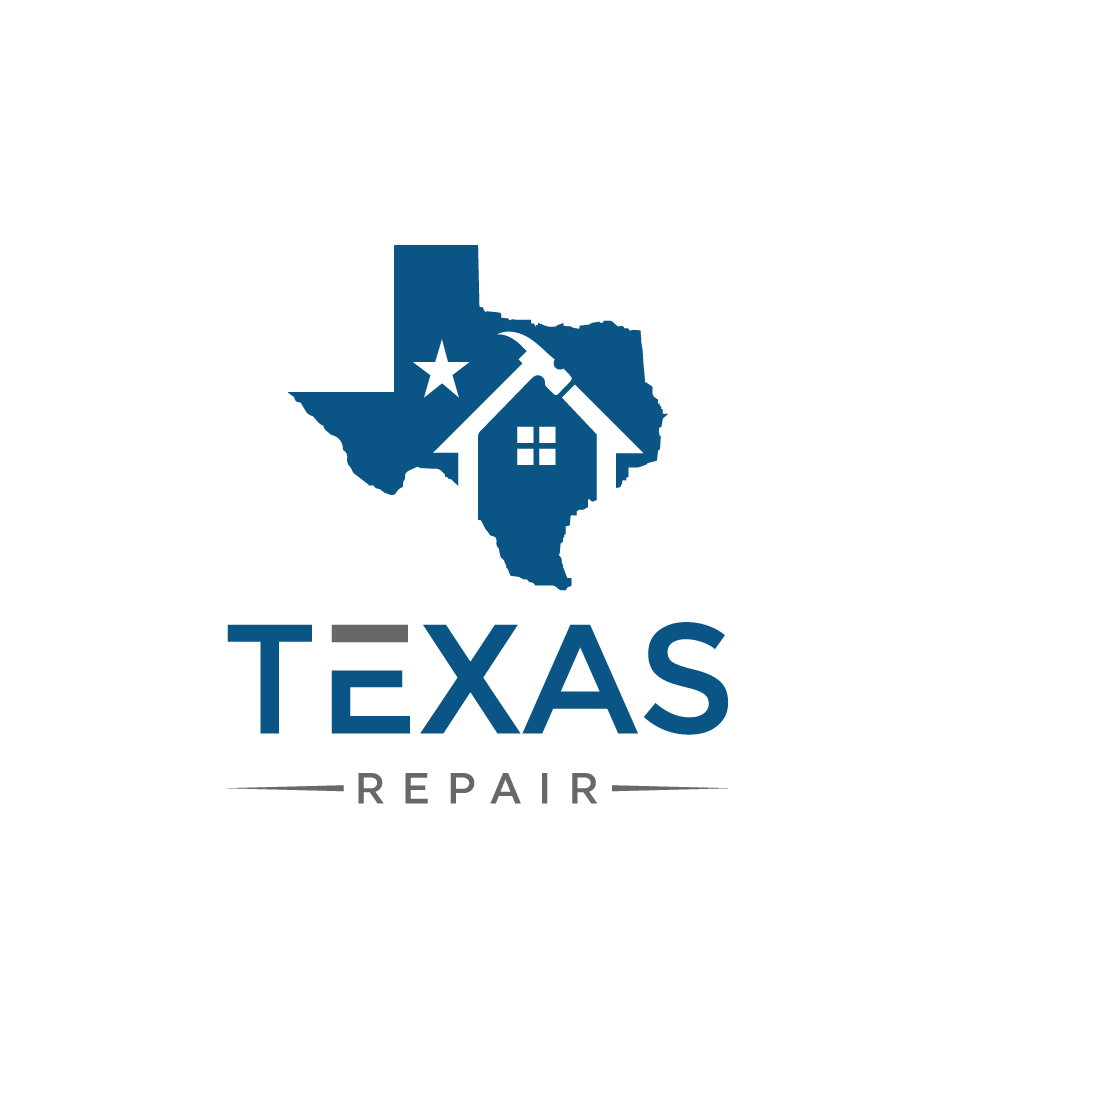 Texas Repair Logo Design Template main cover